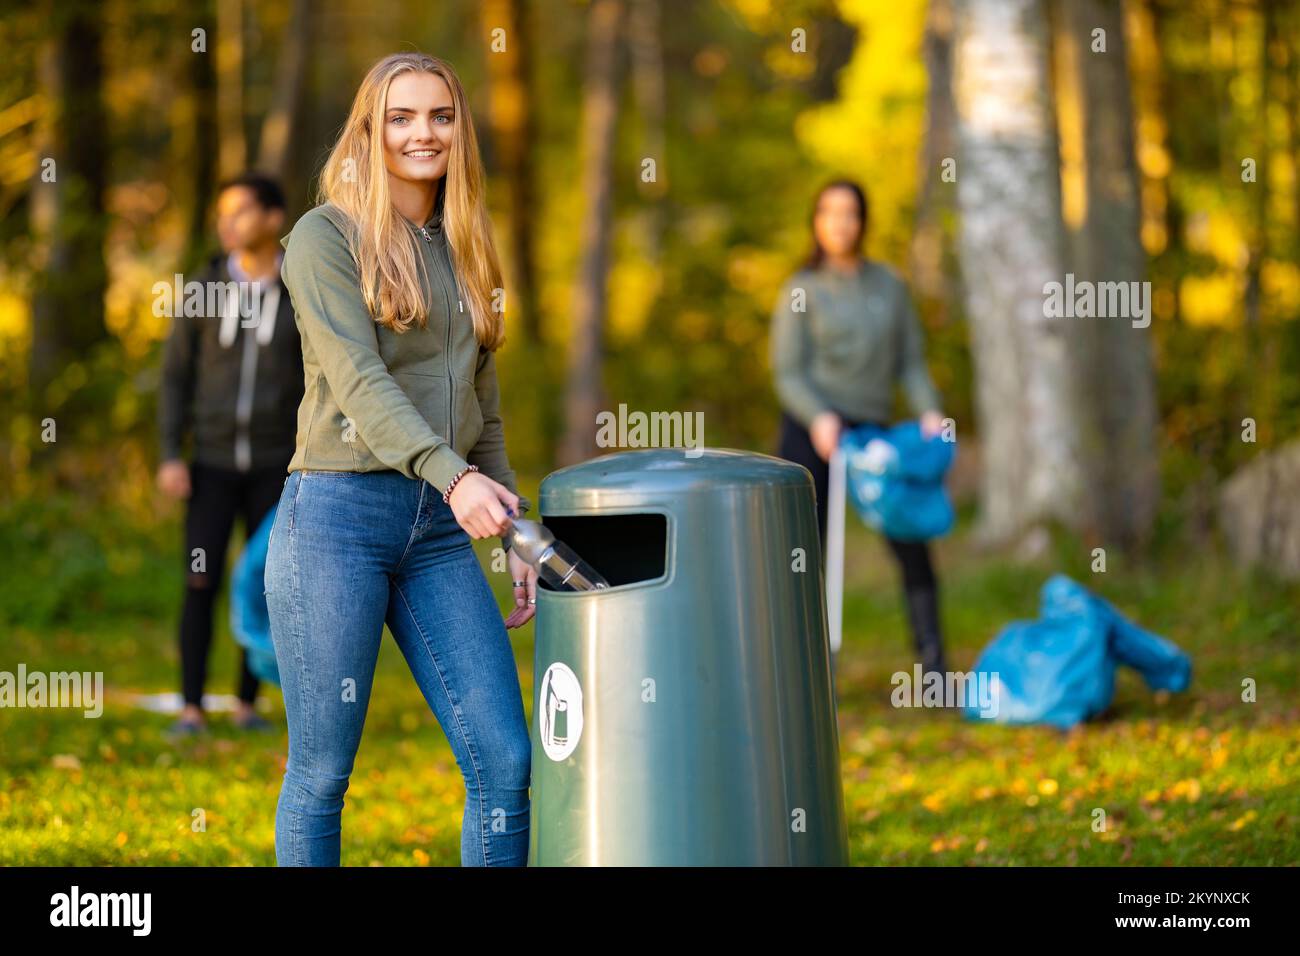 Lächelnde junge Frau, die die Flasche in den Mülleimer wirft Stockfoto